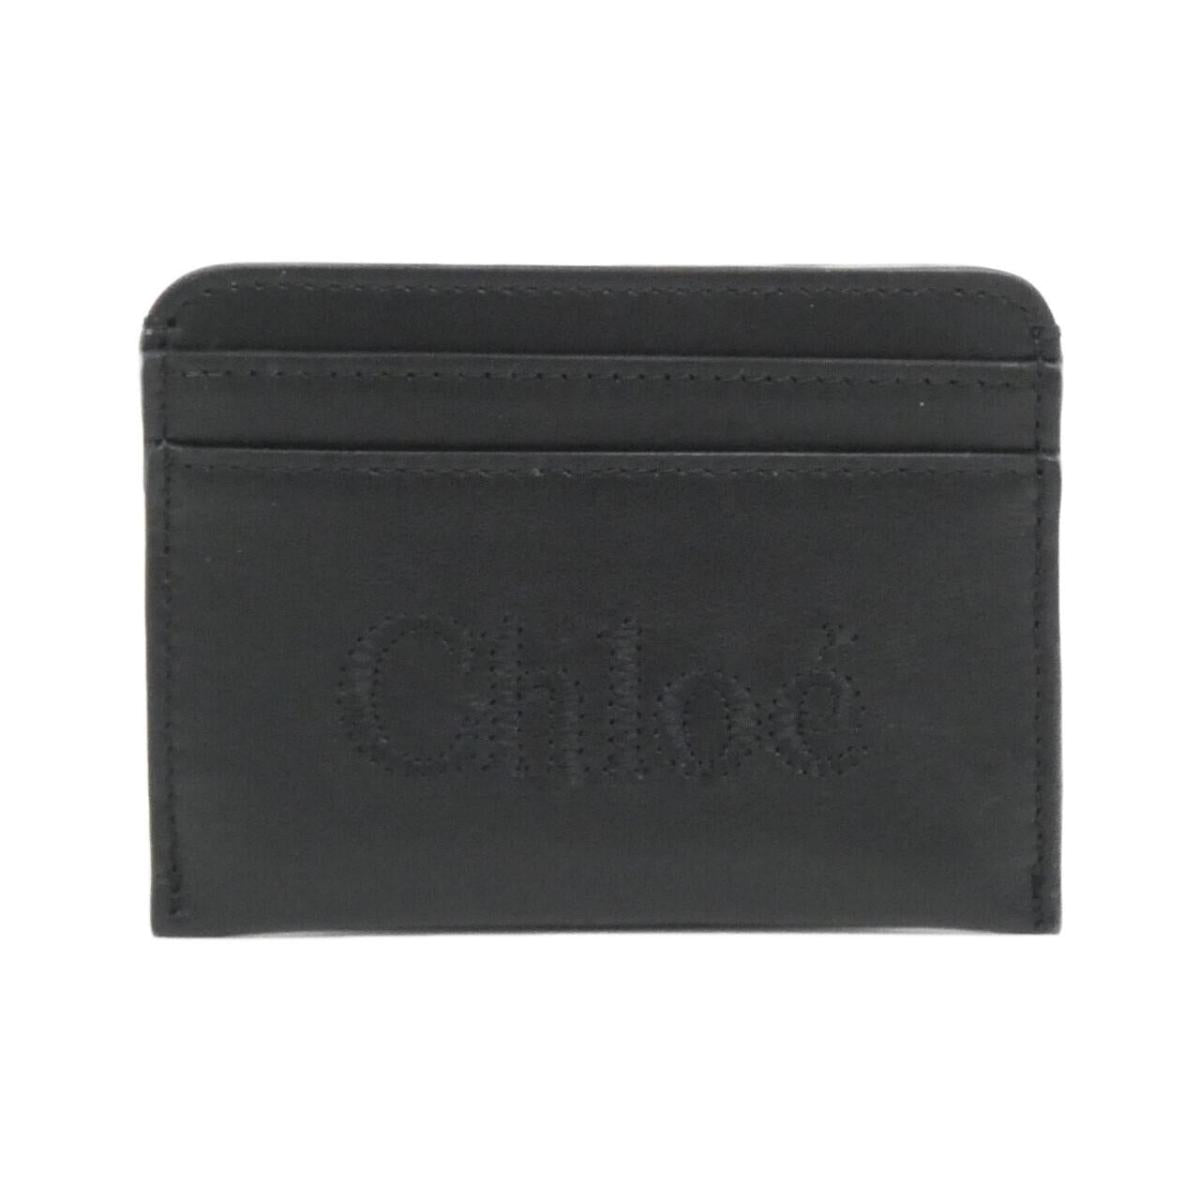 Chloe CHC23SP868 I10 Card Case